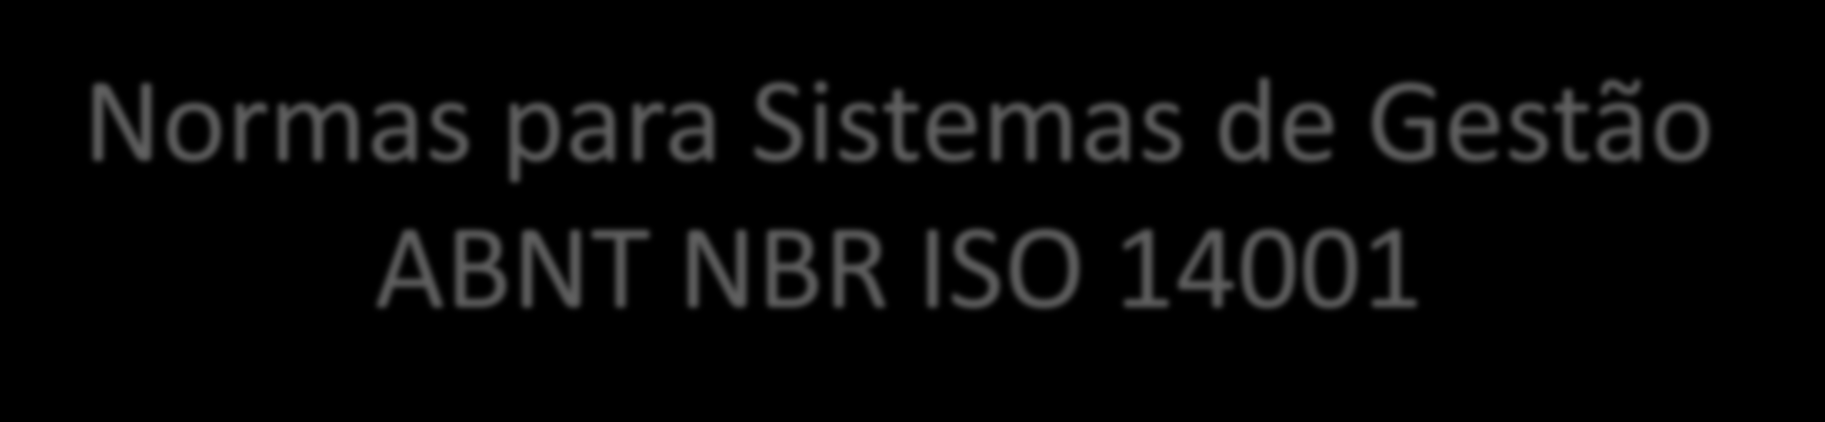 Normas para Sistemas de Gestão ABNT NBR ISO 14001 Professora MSc.